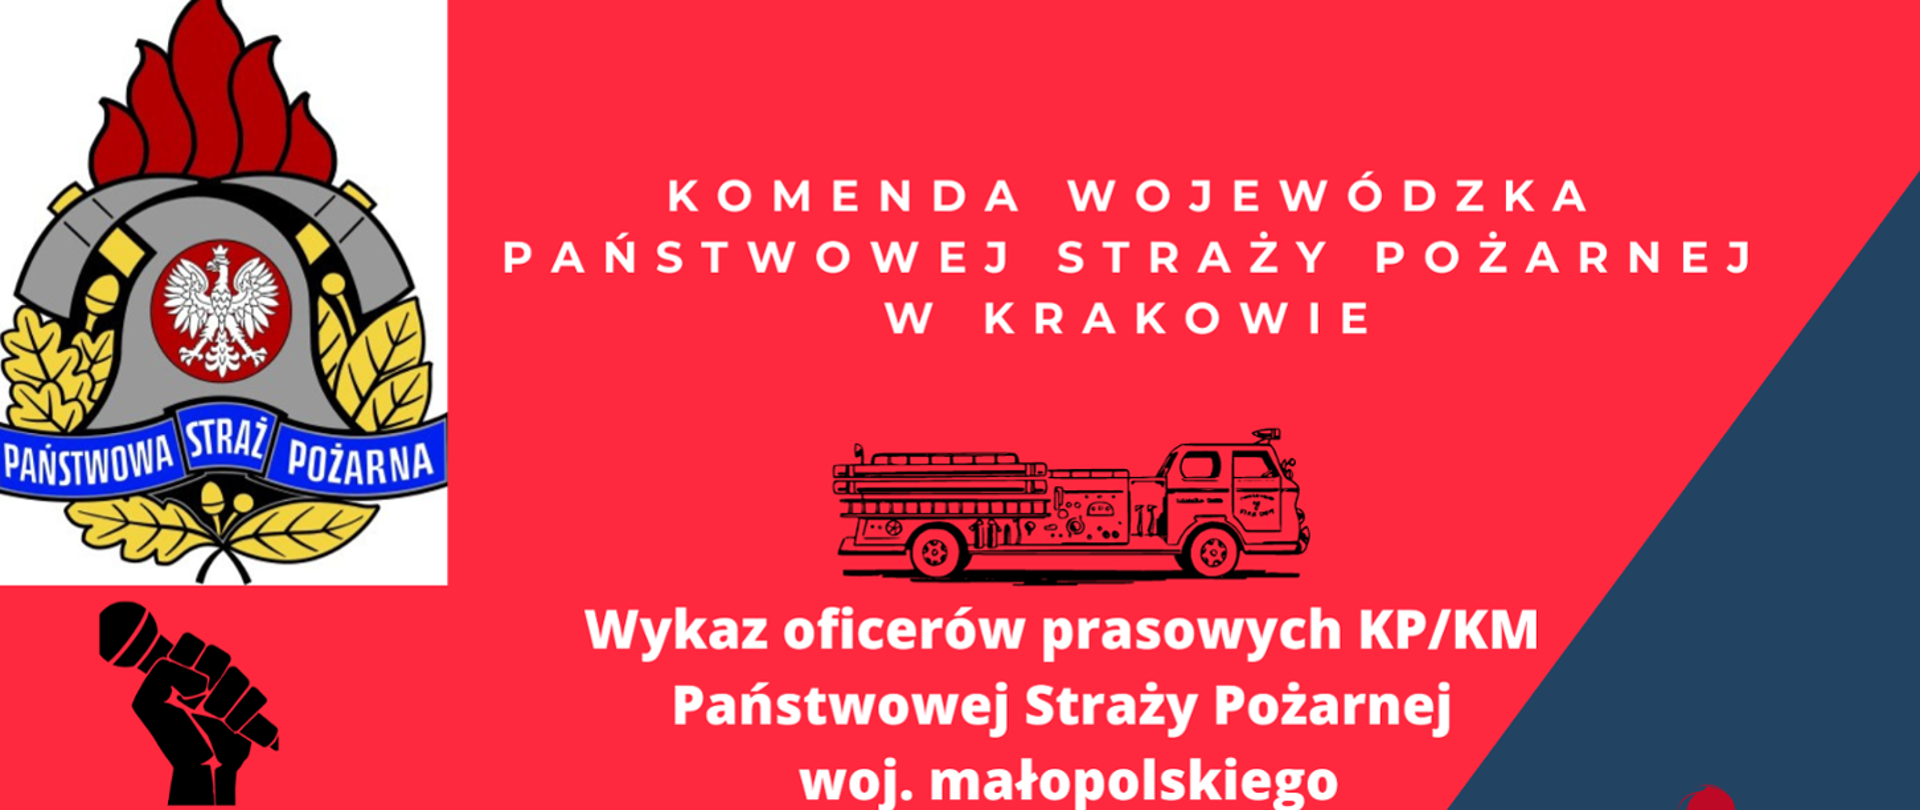 Na zdjęciu logo psp oraz napis Wykaz oficerów prasowych KP/KM Państwowej Straży Pożarnej woj. małopolskiego